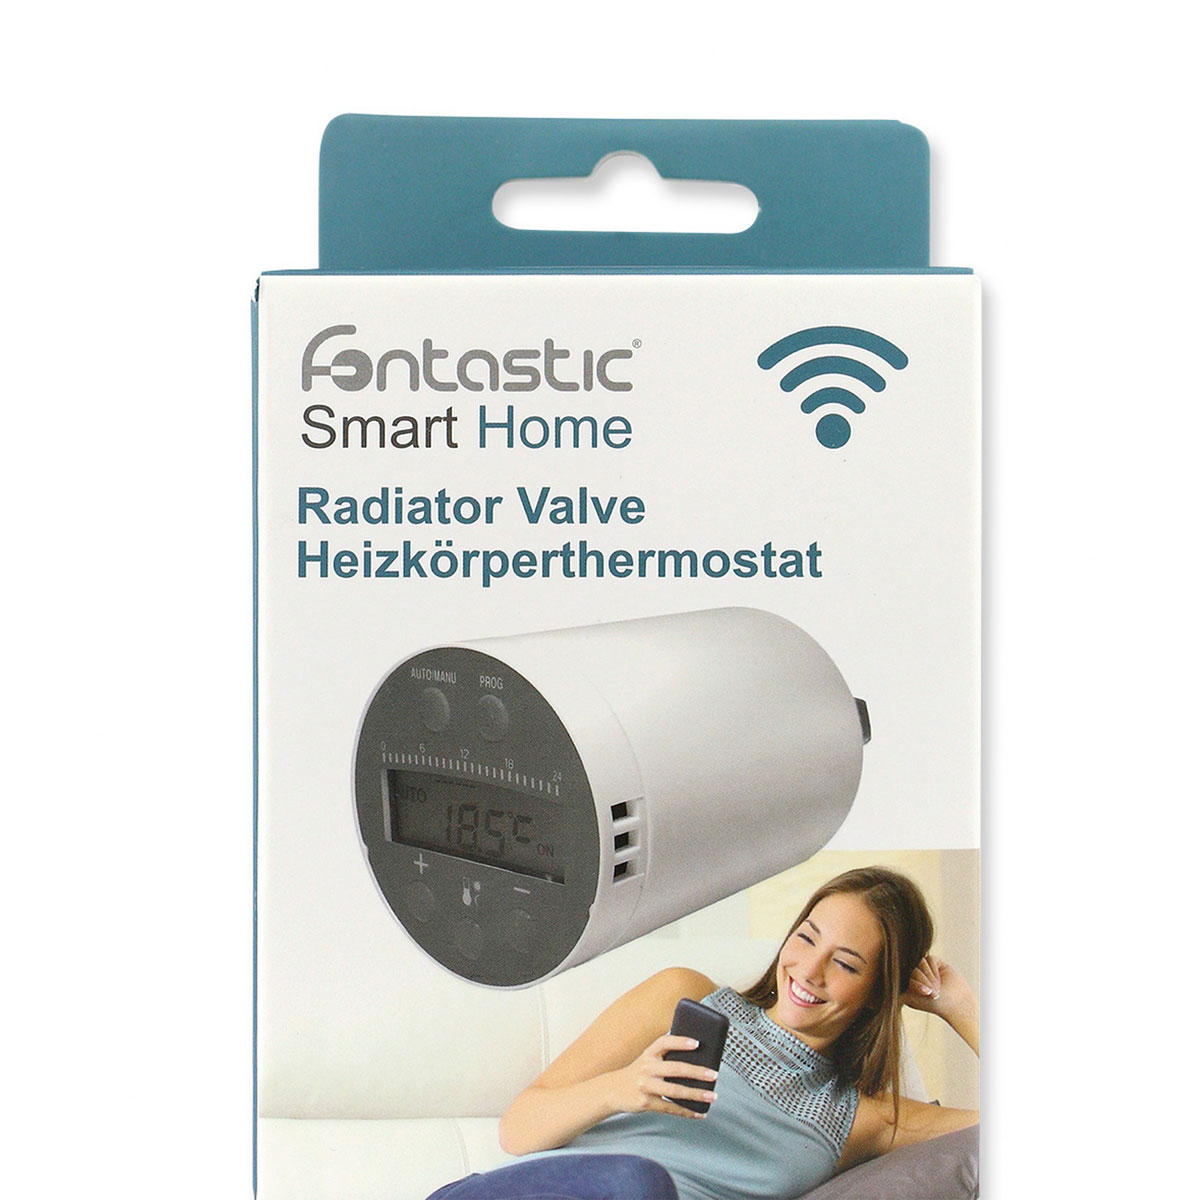 Fontastic Smart Home WiFi Heizkörper Thermostat Erweiterung zum